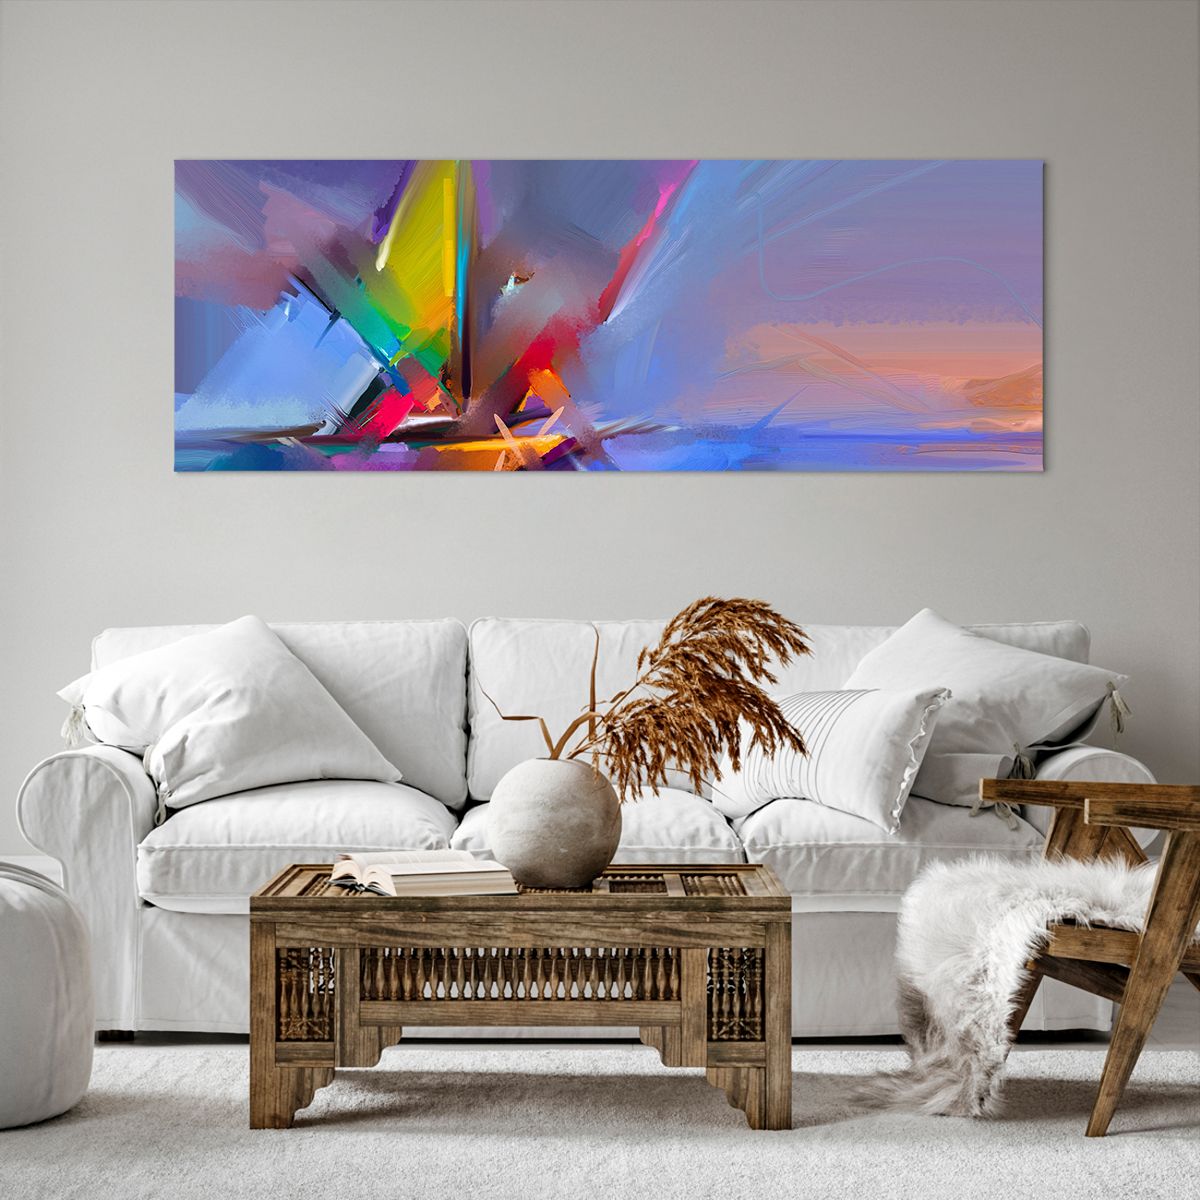 Bild auf Leinwand Abstraktion, Bild auf Leinwand Kunst, Bild auf Leinwand Segelboot, Bild auf Leinwand Moderne Kunst, Bild auf Leinwand Malerei